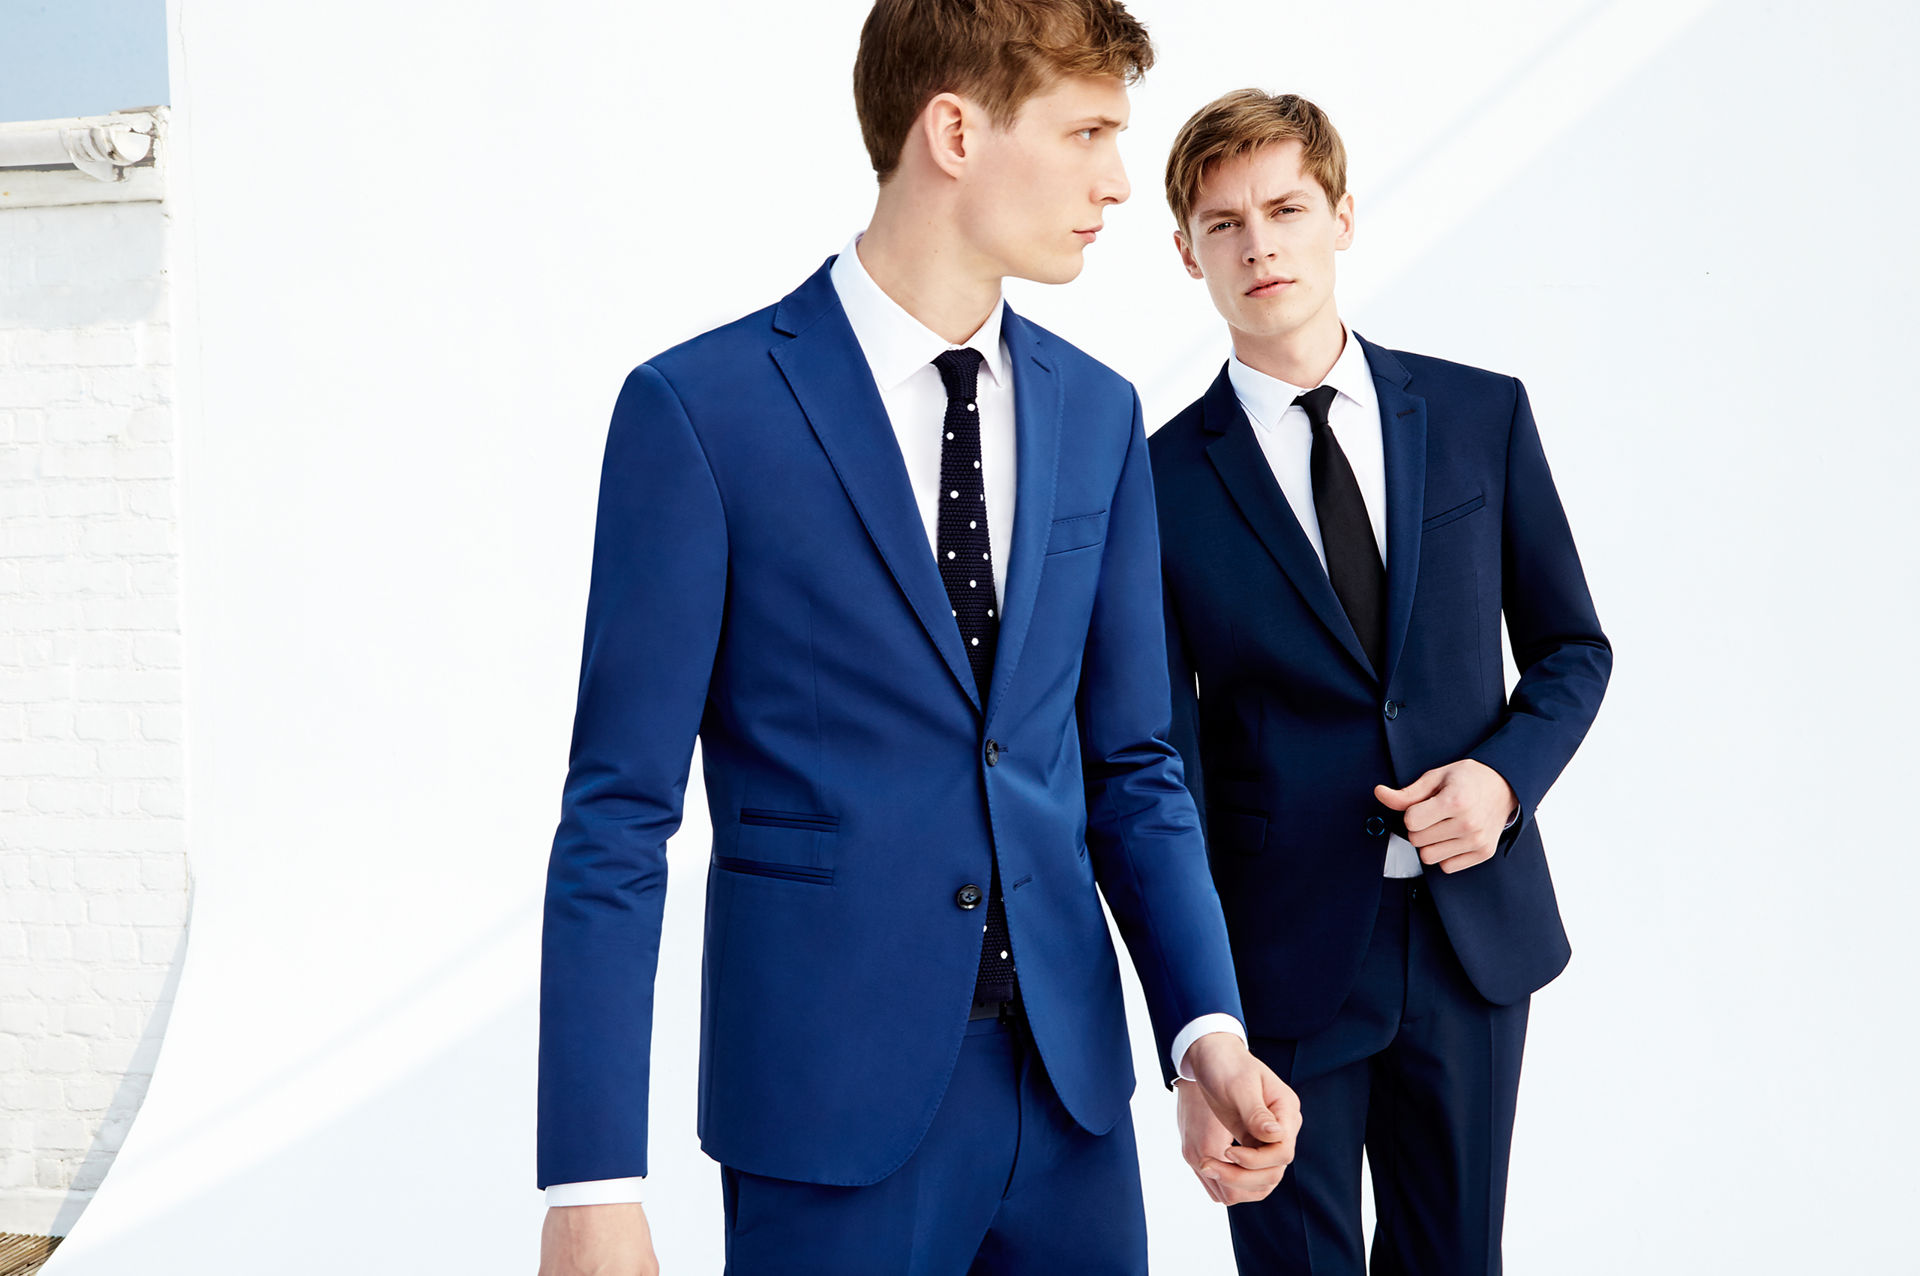 Zara MAN Lookbook: New Tailoring for Spring/Summer 2015